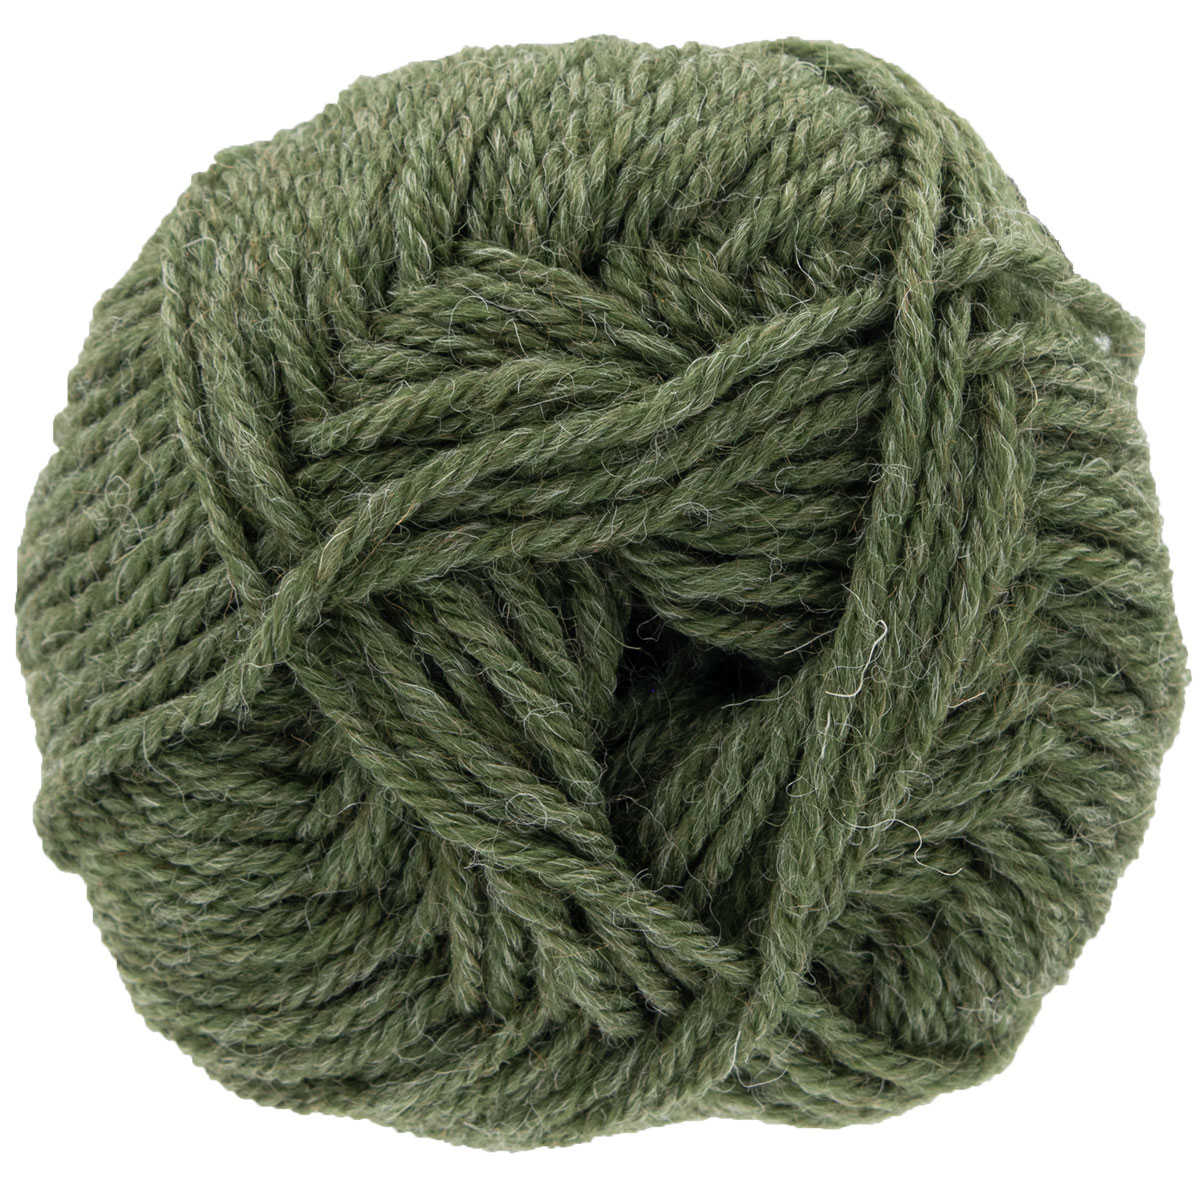 Copenhagen Yarn Store Vlog: Visiting Knitting For Olive (Part 1